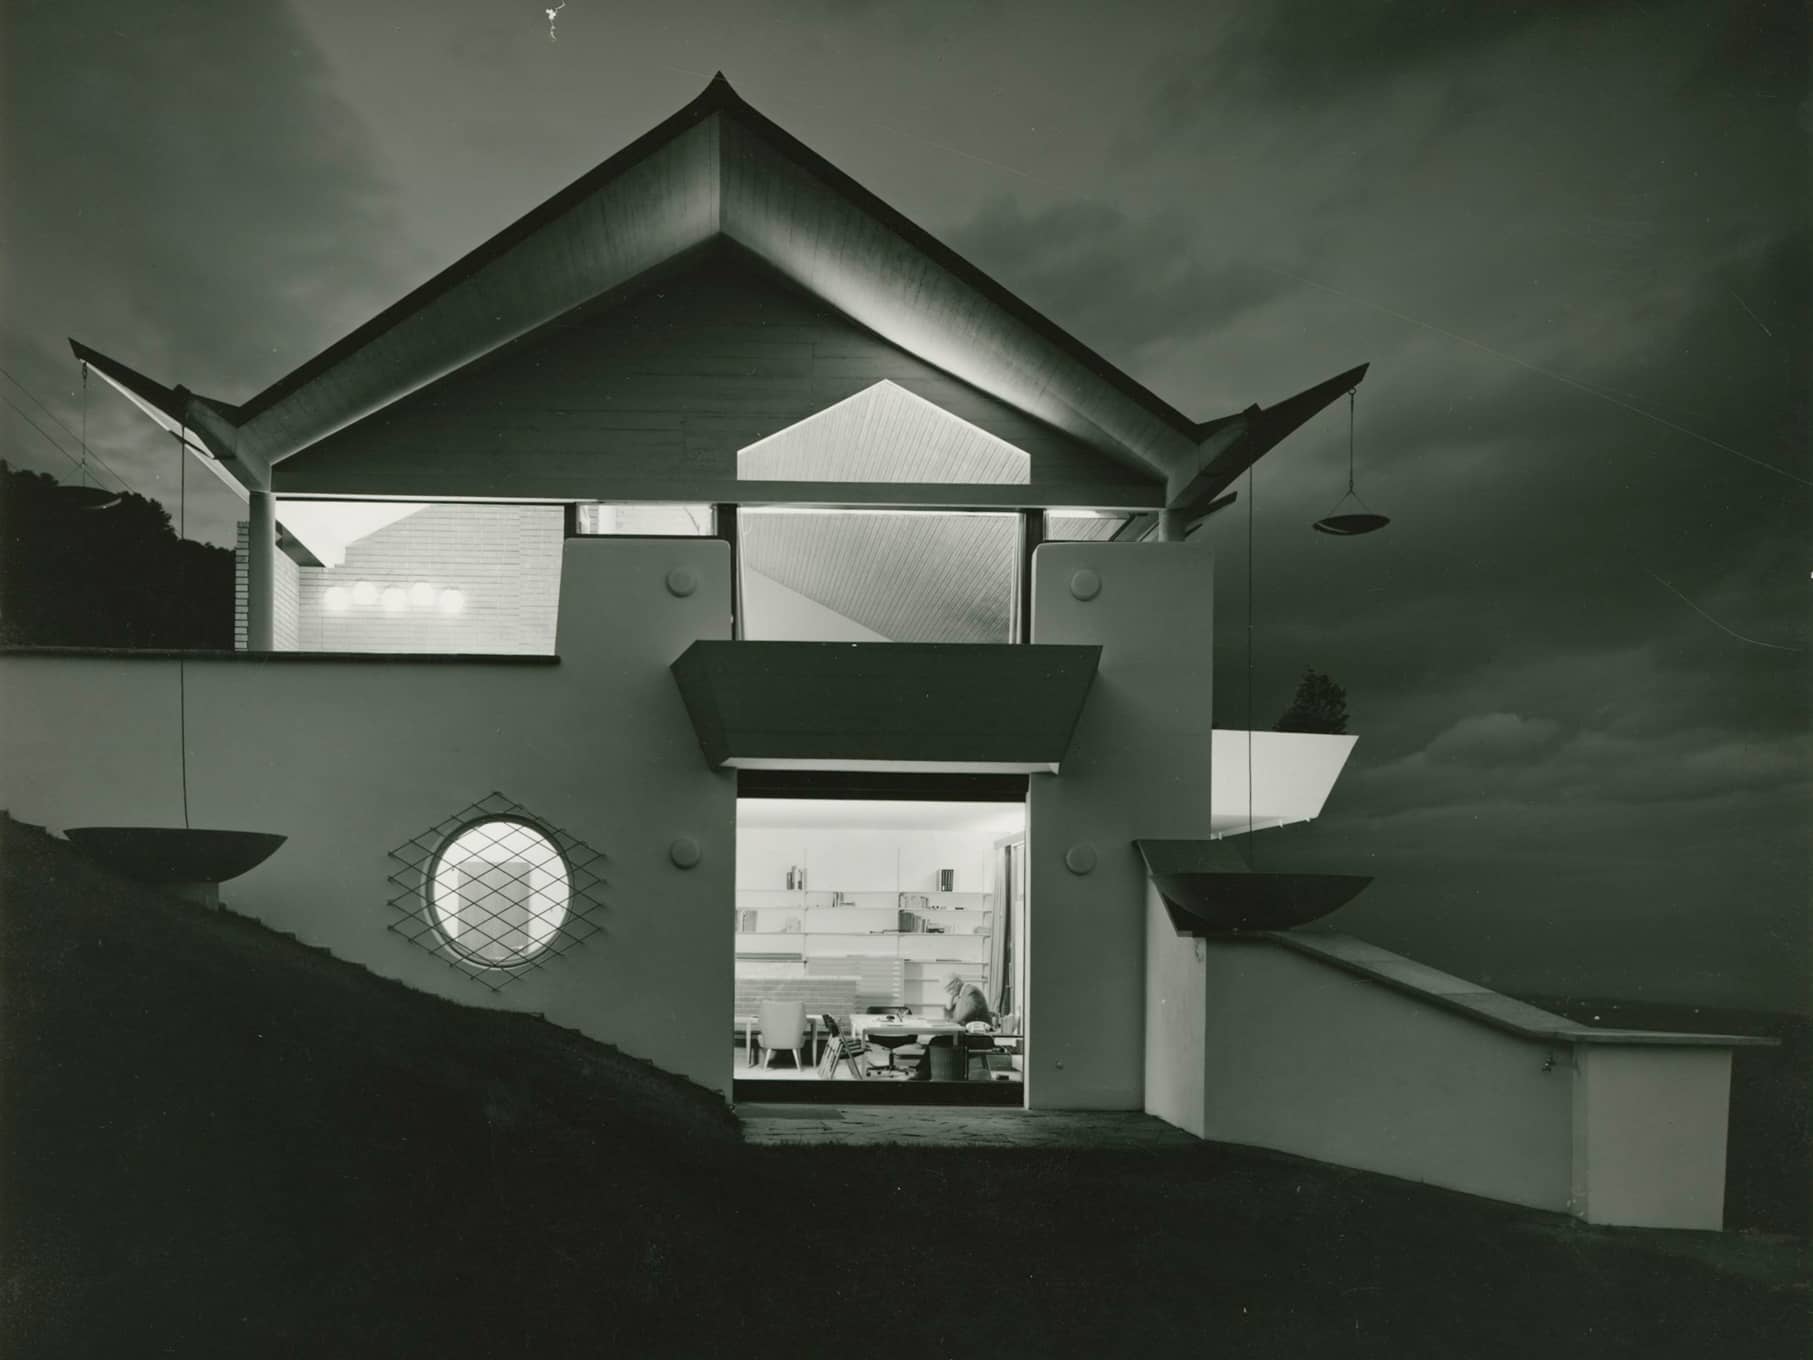 Privat House Bugnaux, Schweiz, 1963